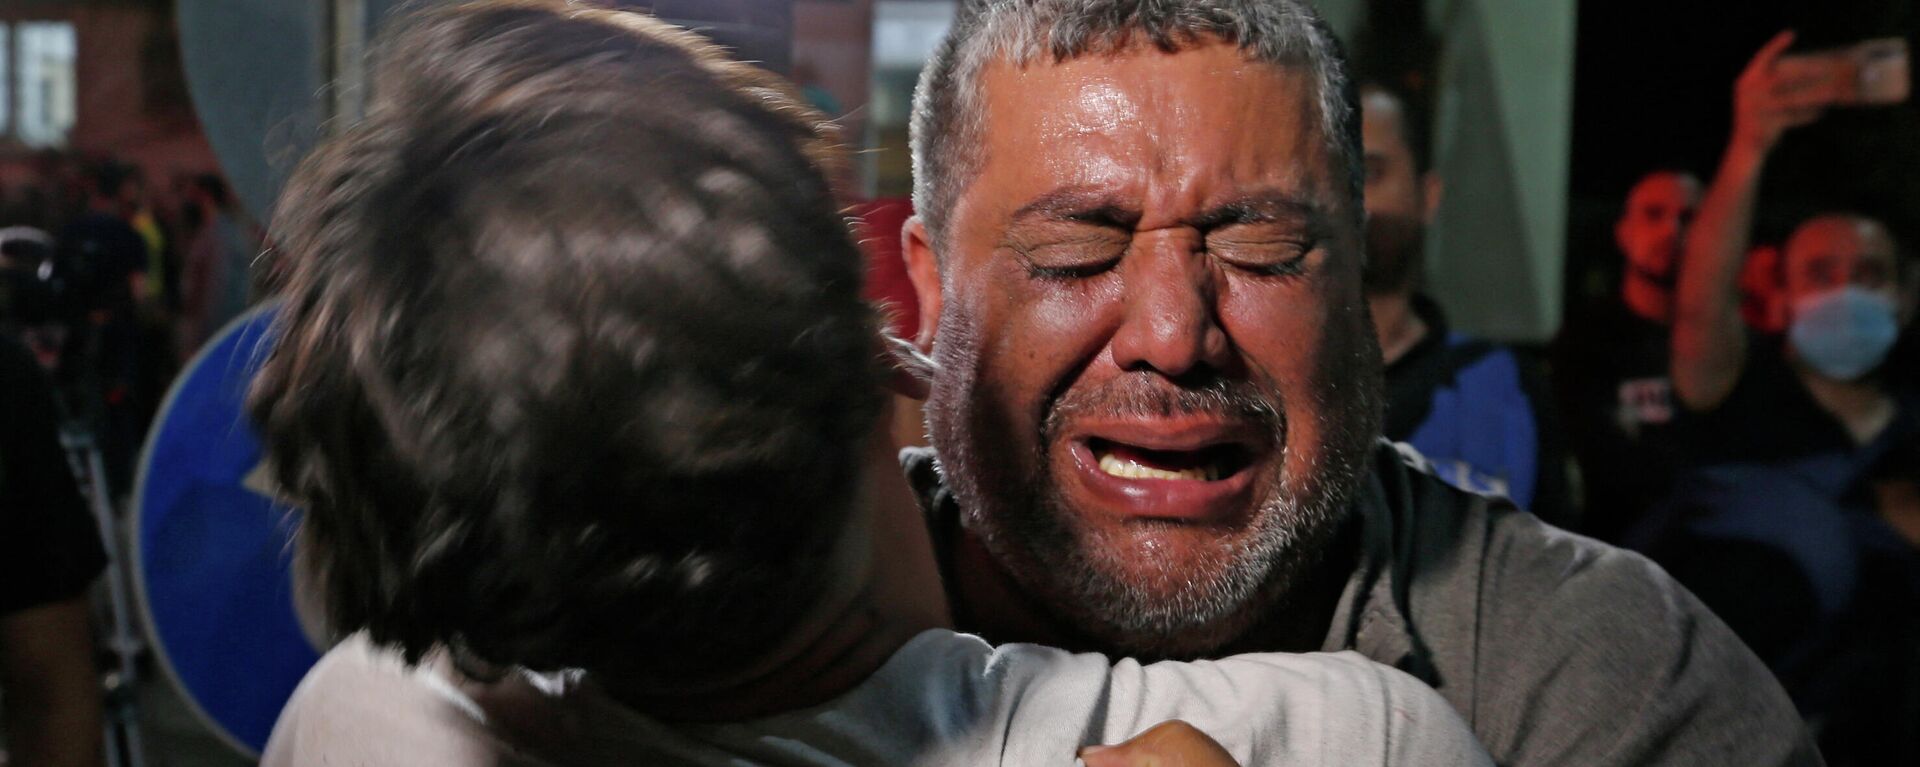 Un palestino llora en un hospital en la ciudad de Gaza. 12 de mayo de 2021. - Sputnik Mundo, 1920, 13.05.2021